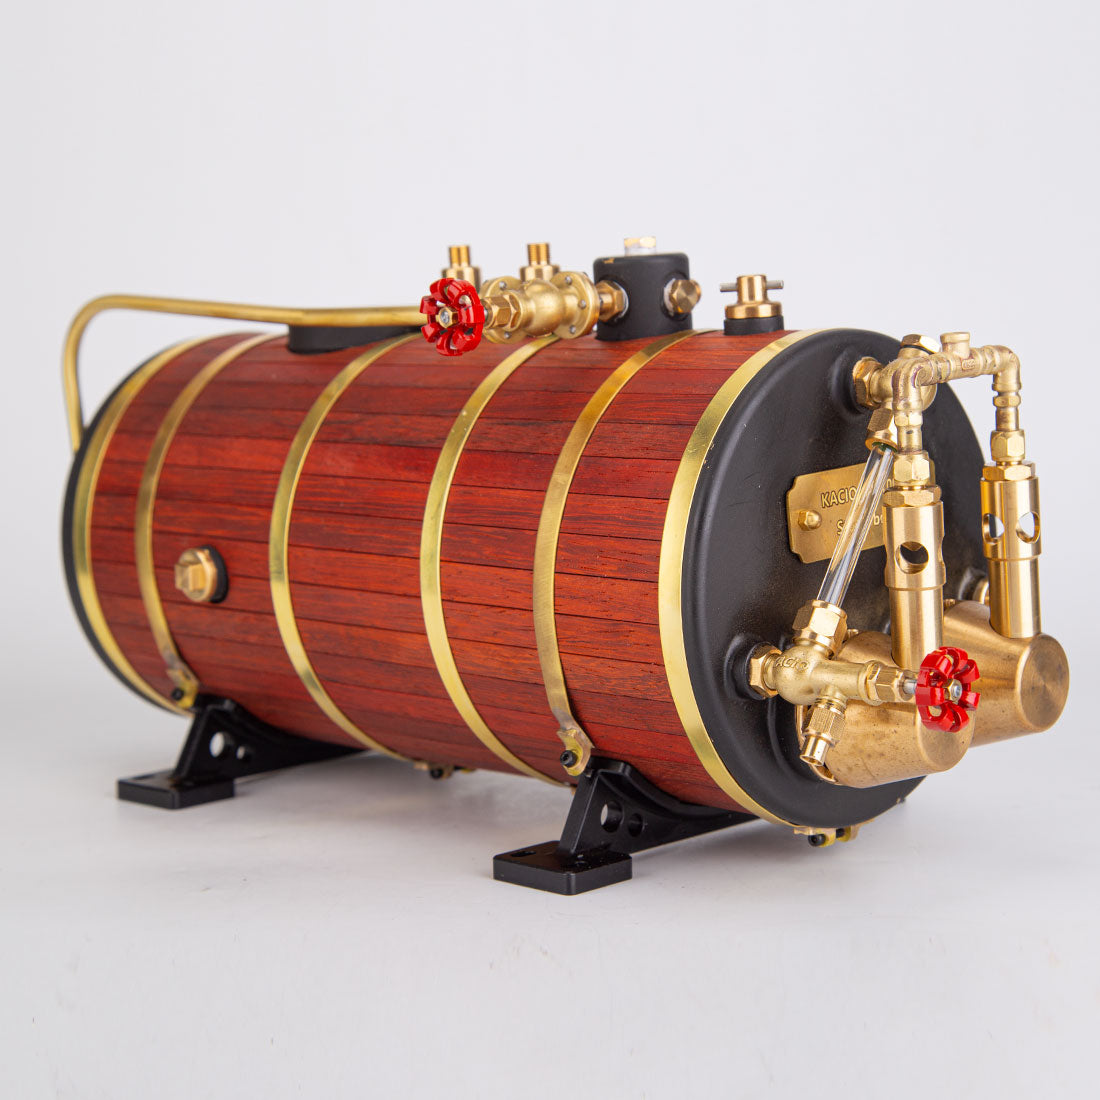 steam boiler for model steam engine boat ship